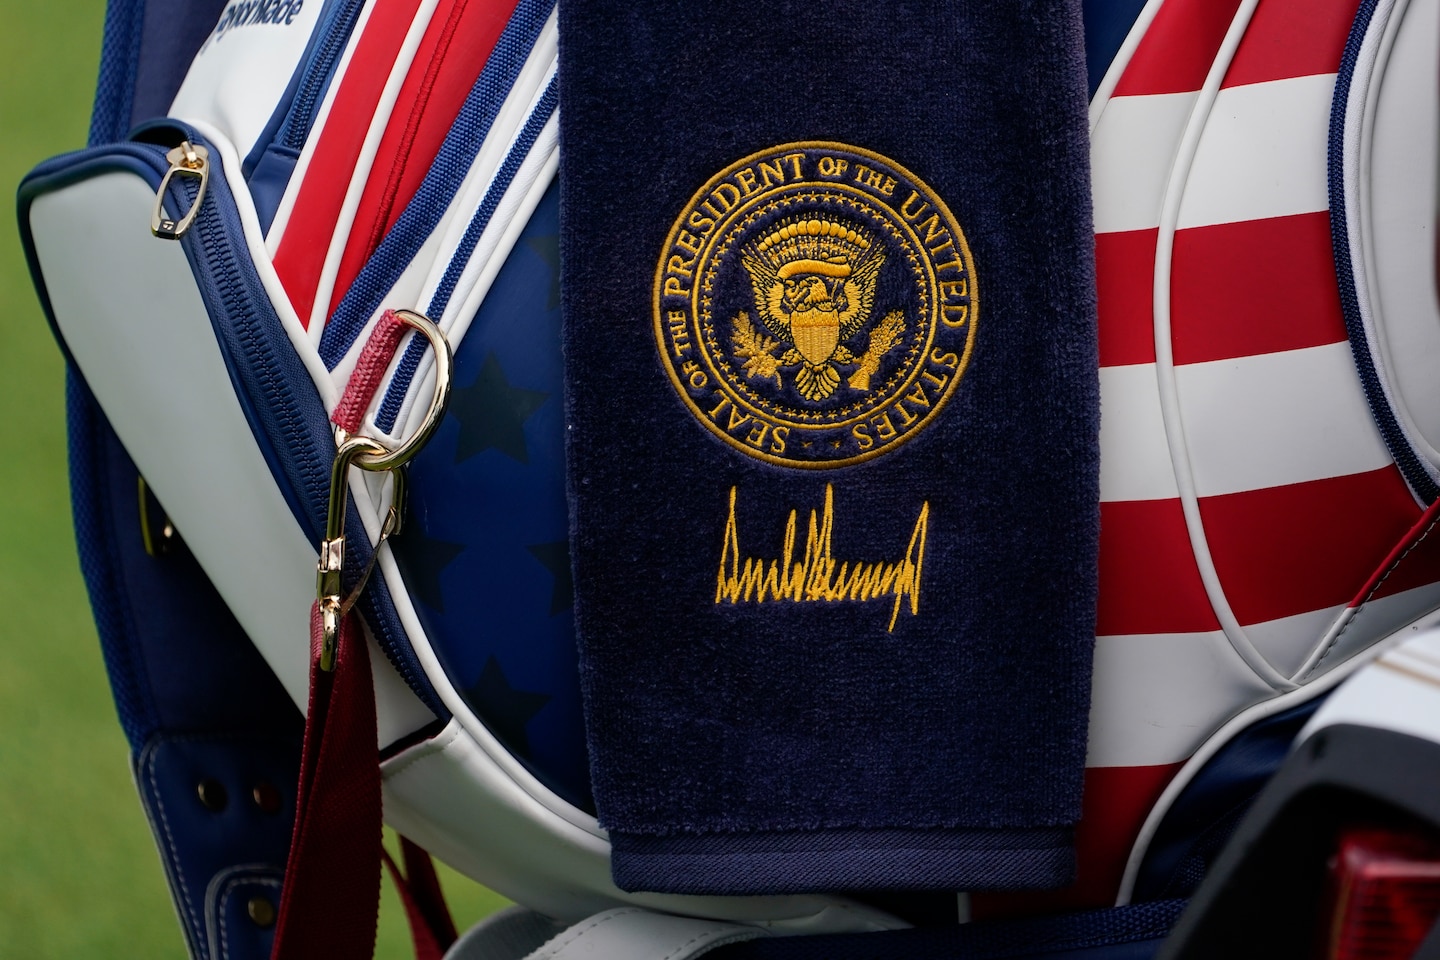 Trump usa il sigillo presidenziale ai campionati di golf LIV a Bedminster, NJ